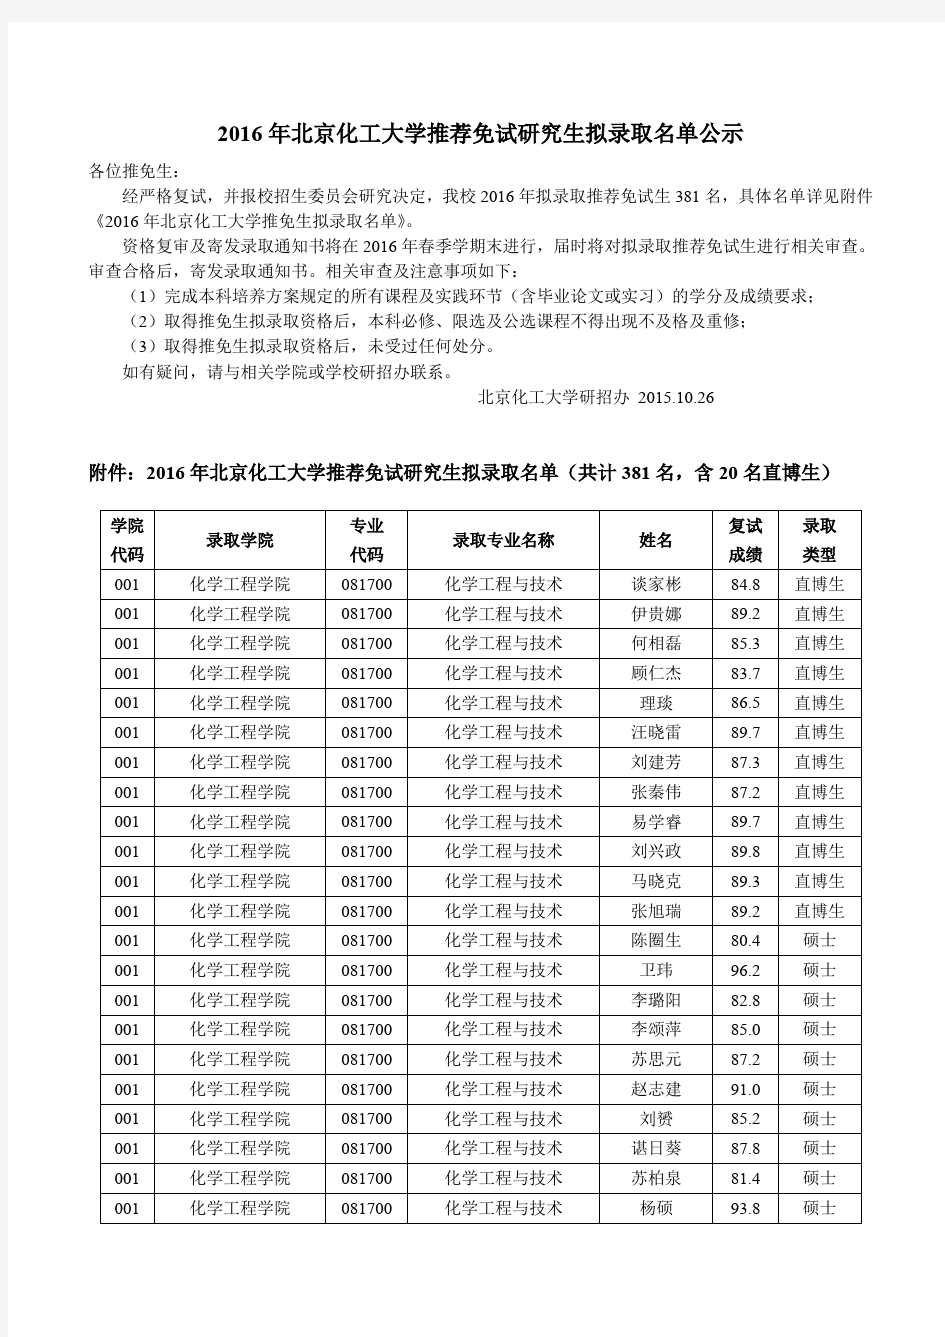 北京化工大学2016年推荐免试研究生拟录取名单公示